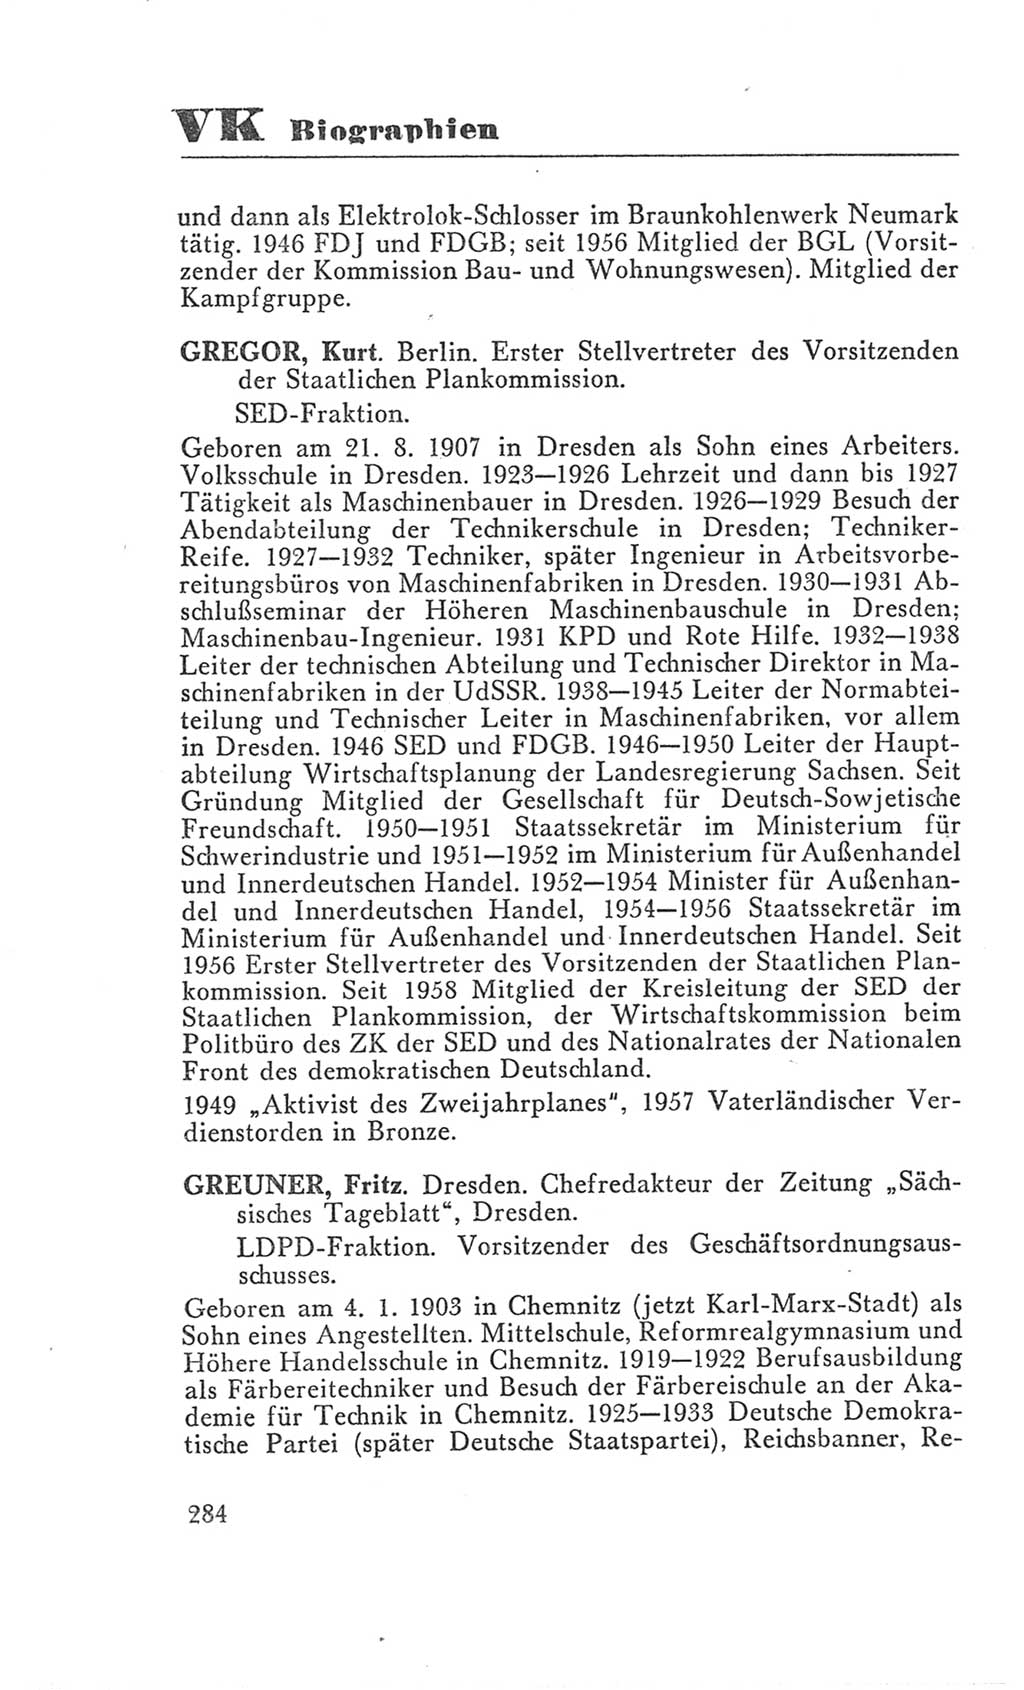 Handbuch der Volkskammer (VK) der Deutschen Demokratischen Republik (DDR), 3. Wahlperiode 1958-1963, Seite 284 (Hdb. VK. DDR 3. WP. 1958-1963, S. 284)